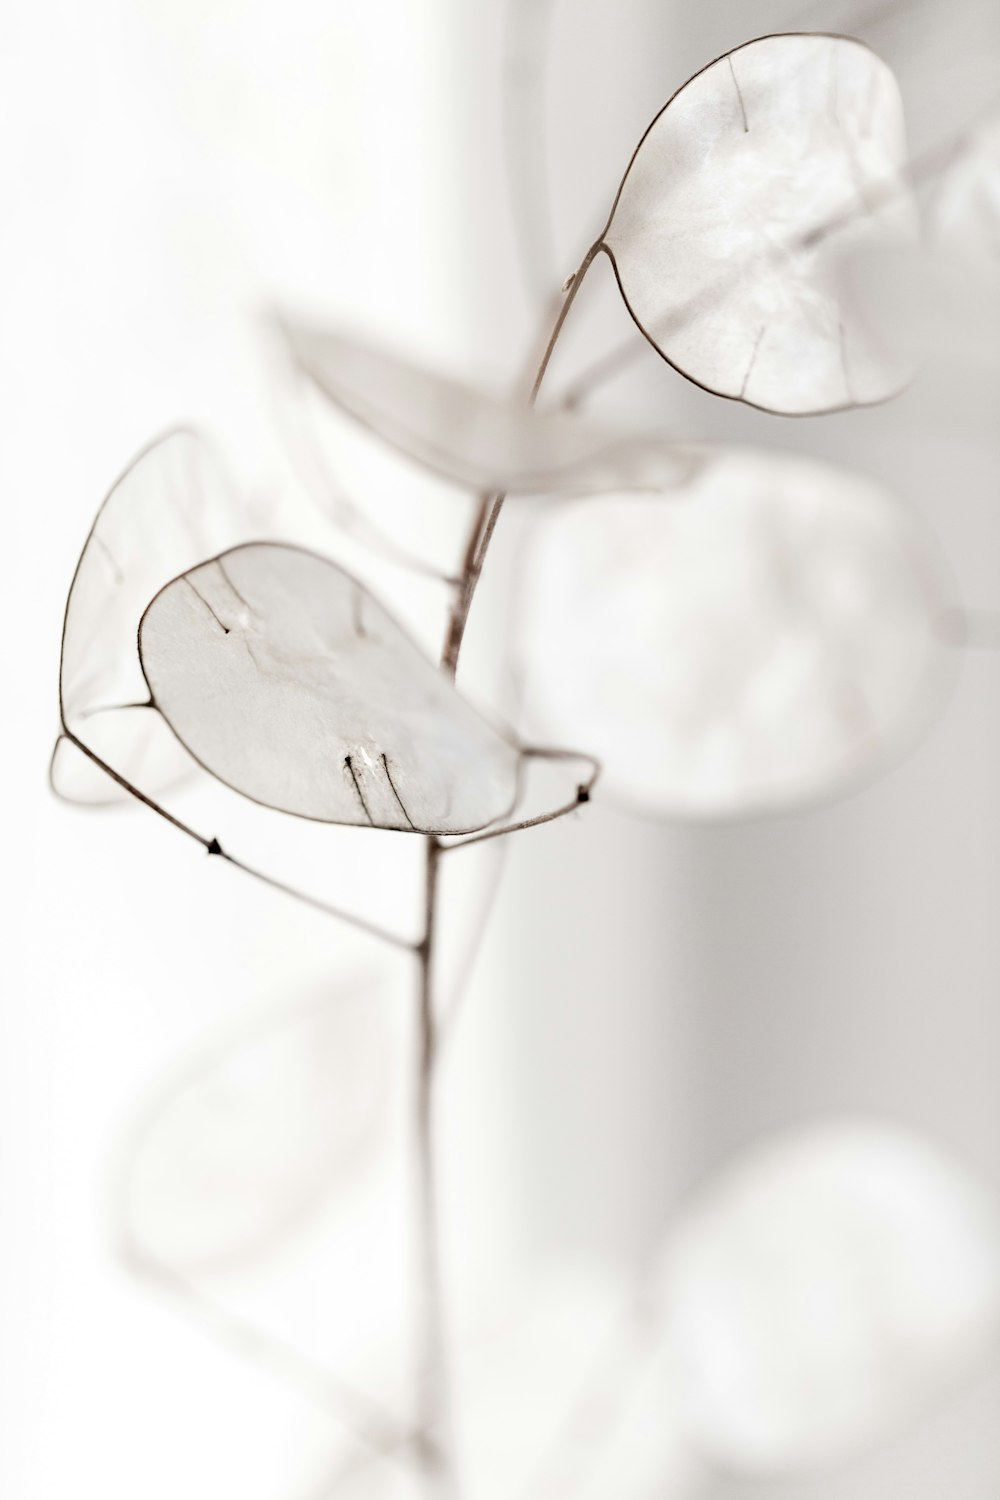 Fotografía de enfoque selectivo de flores blancas